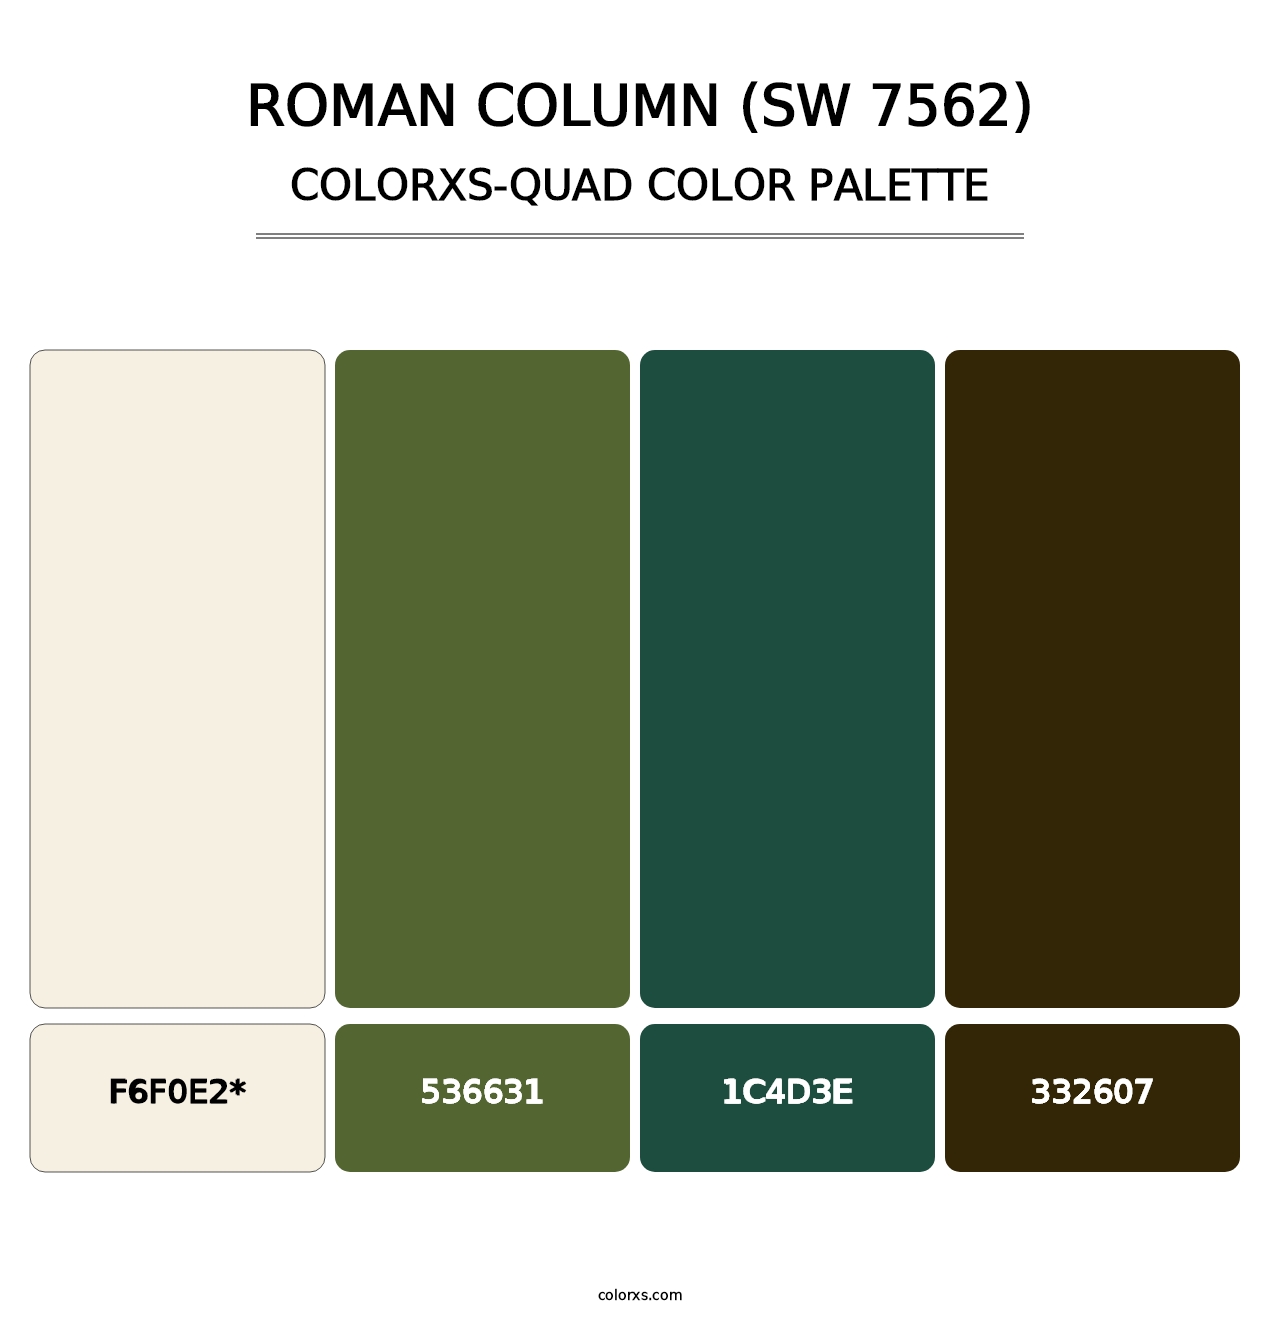 Roman Column (SW 7562) - Colorxs Quad Palette